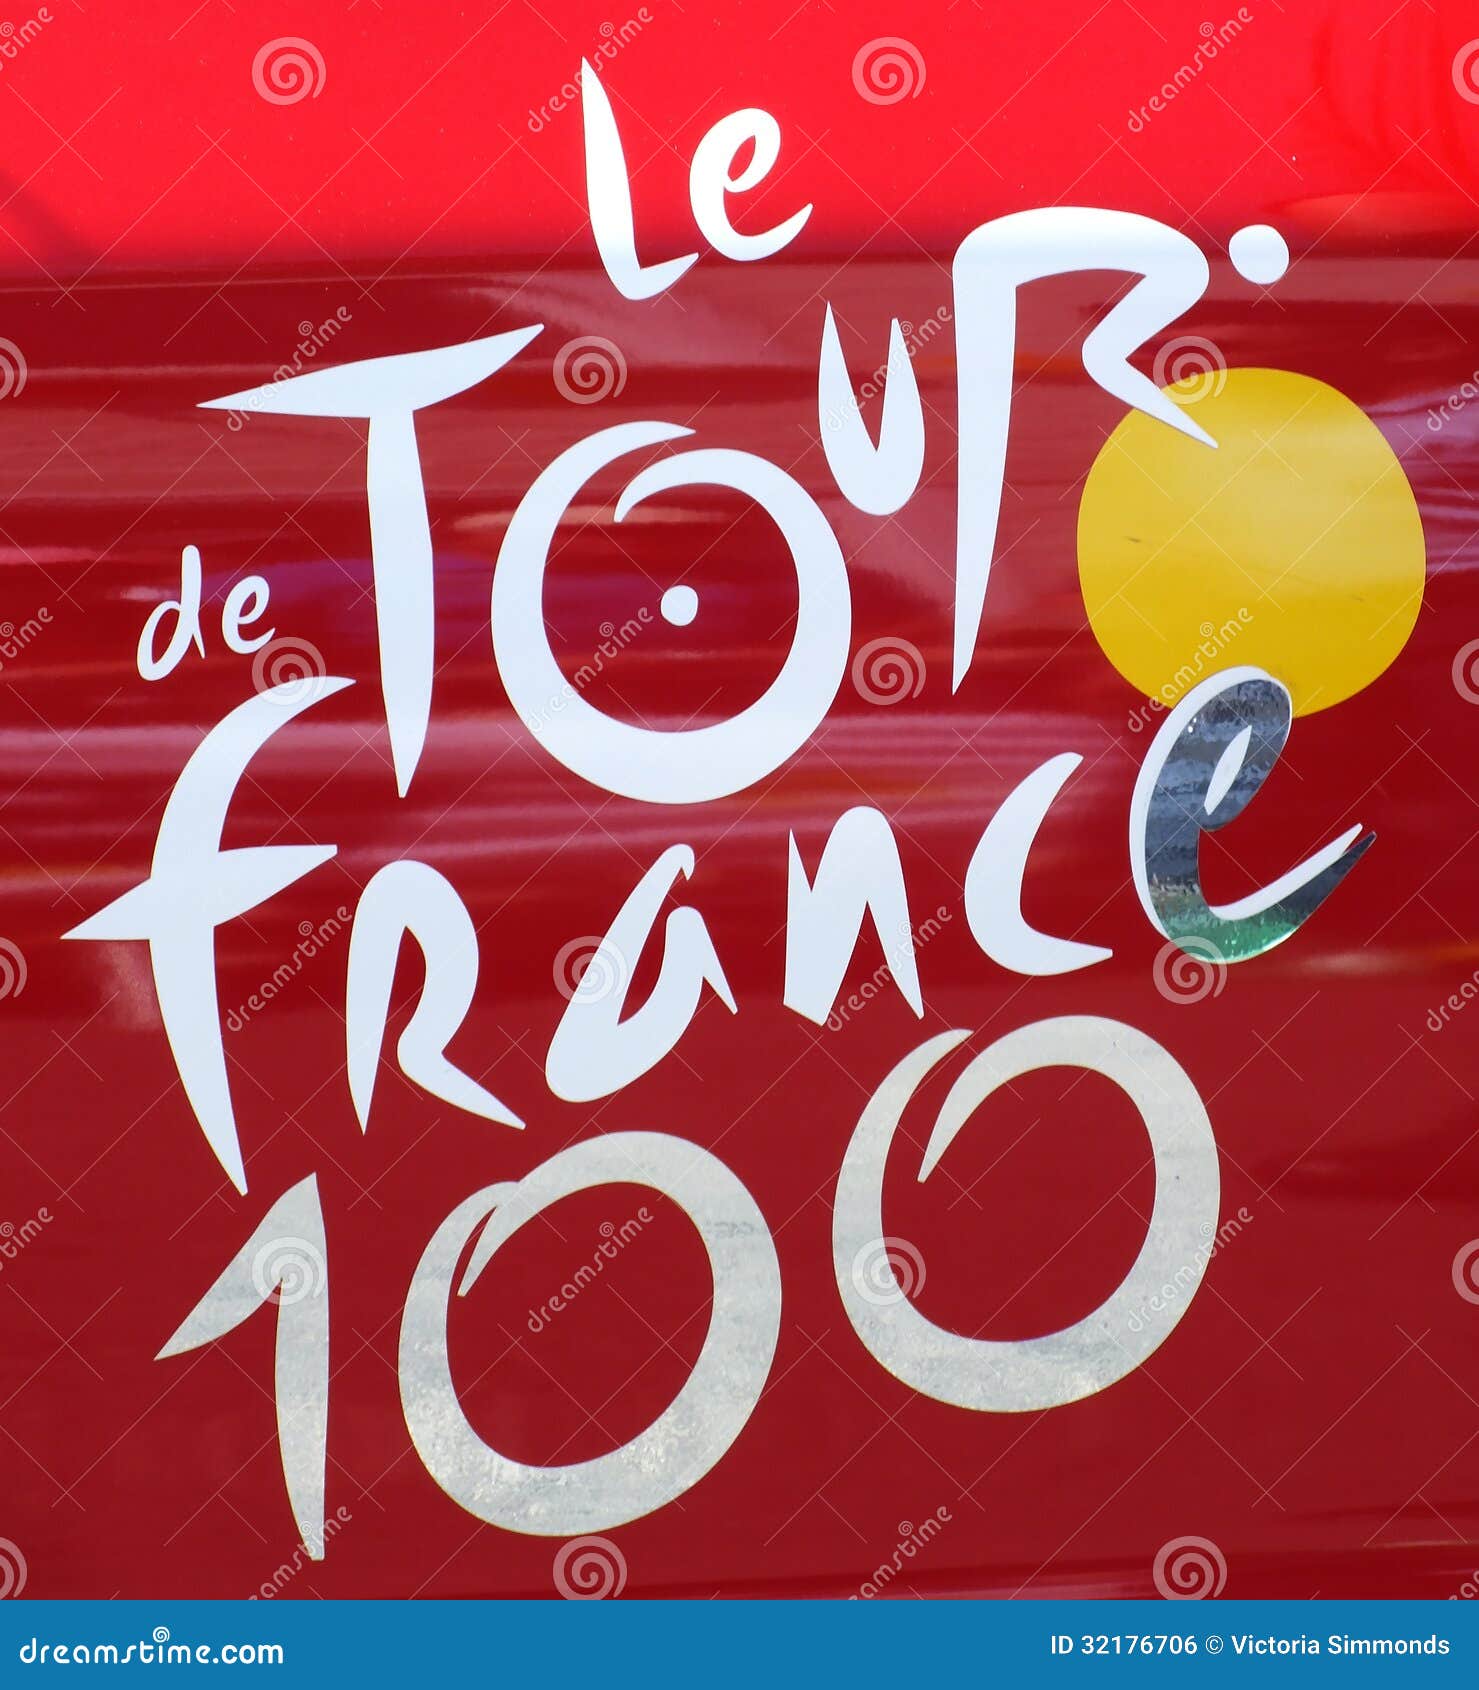 100 Tour De France